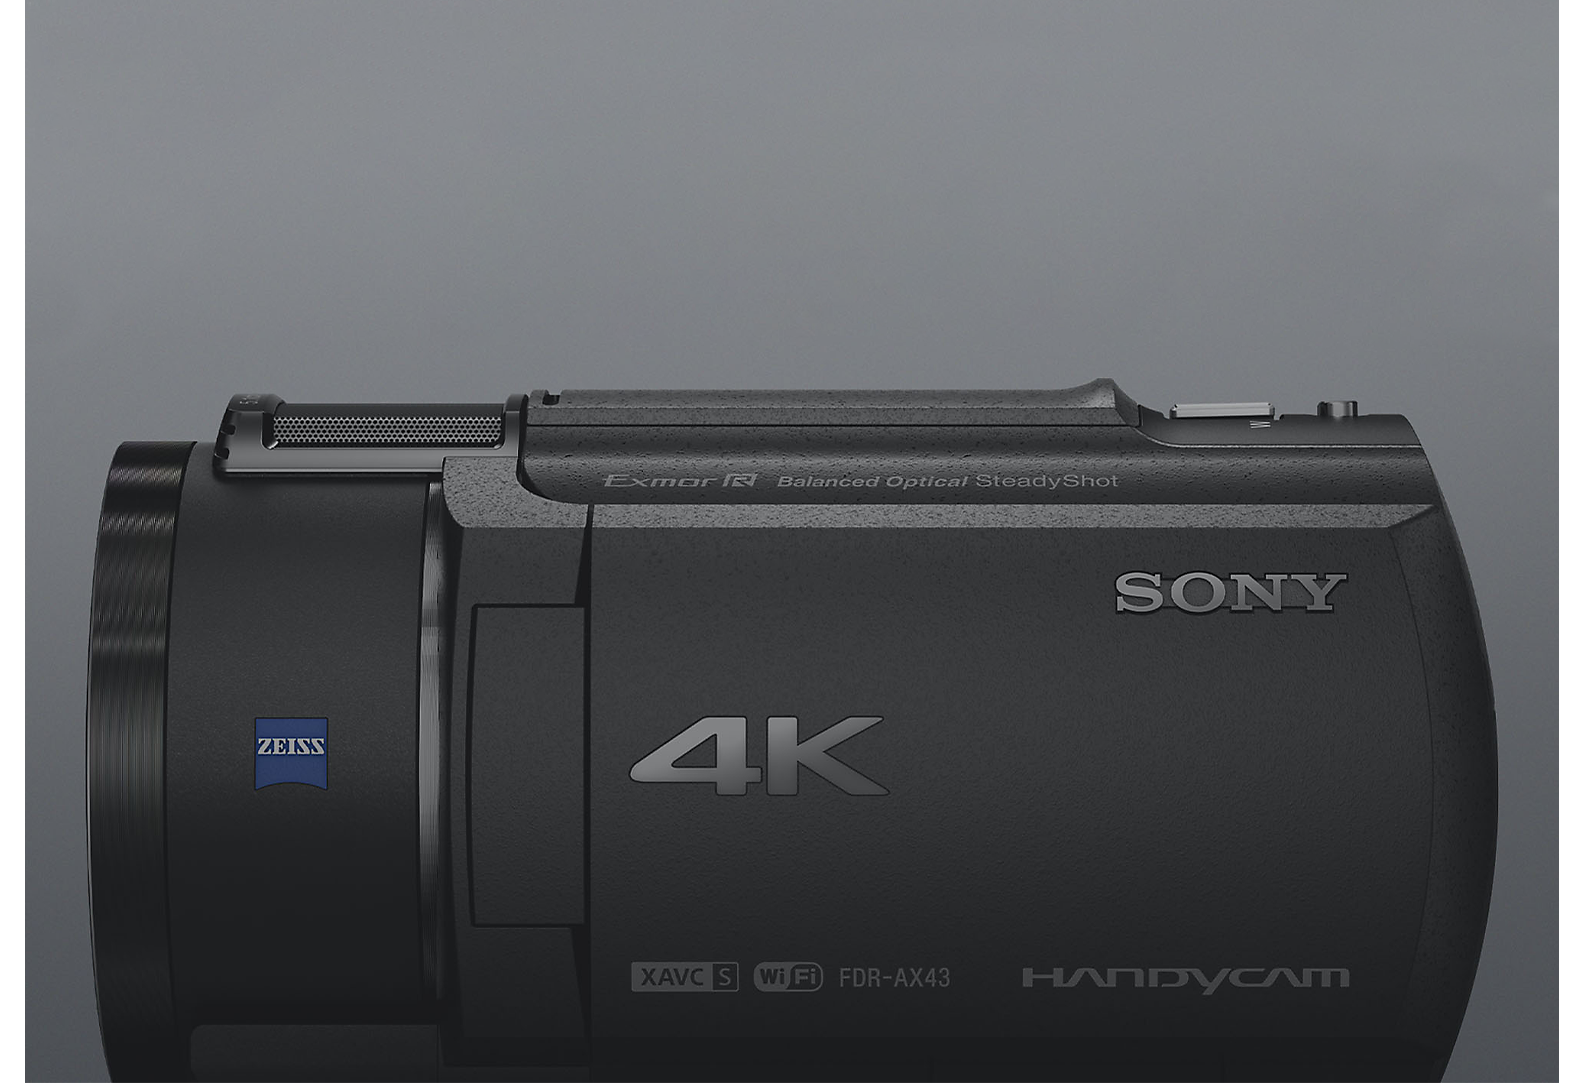 Видеокамера Sony 4K Handycam, вид сбоку